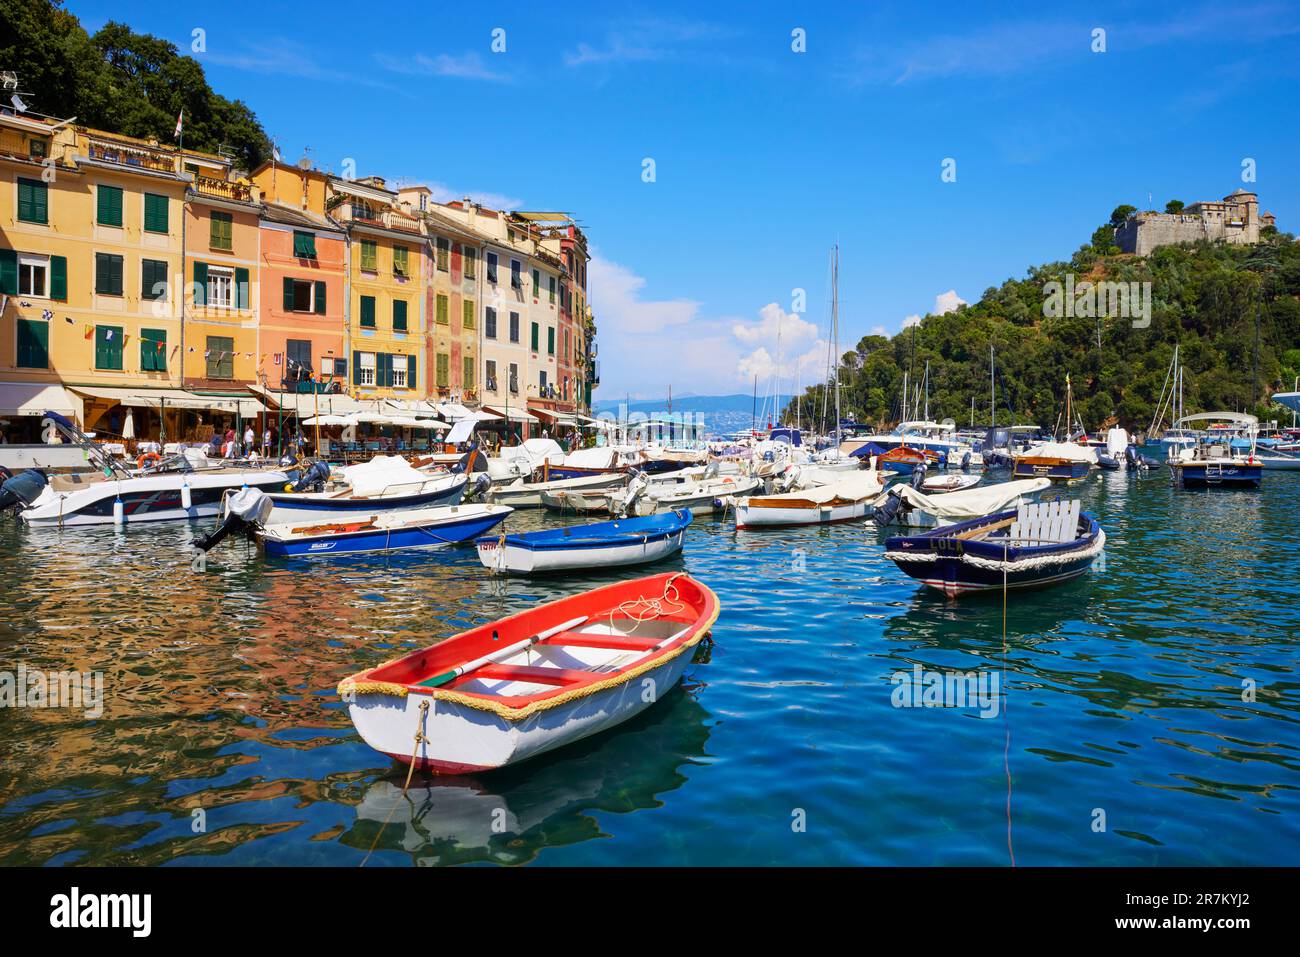 Boats moored in Portofino harbour, Castello Brown on hilltop, Portofino, Liguria, Italy Stock Photo